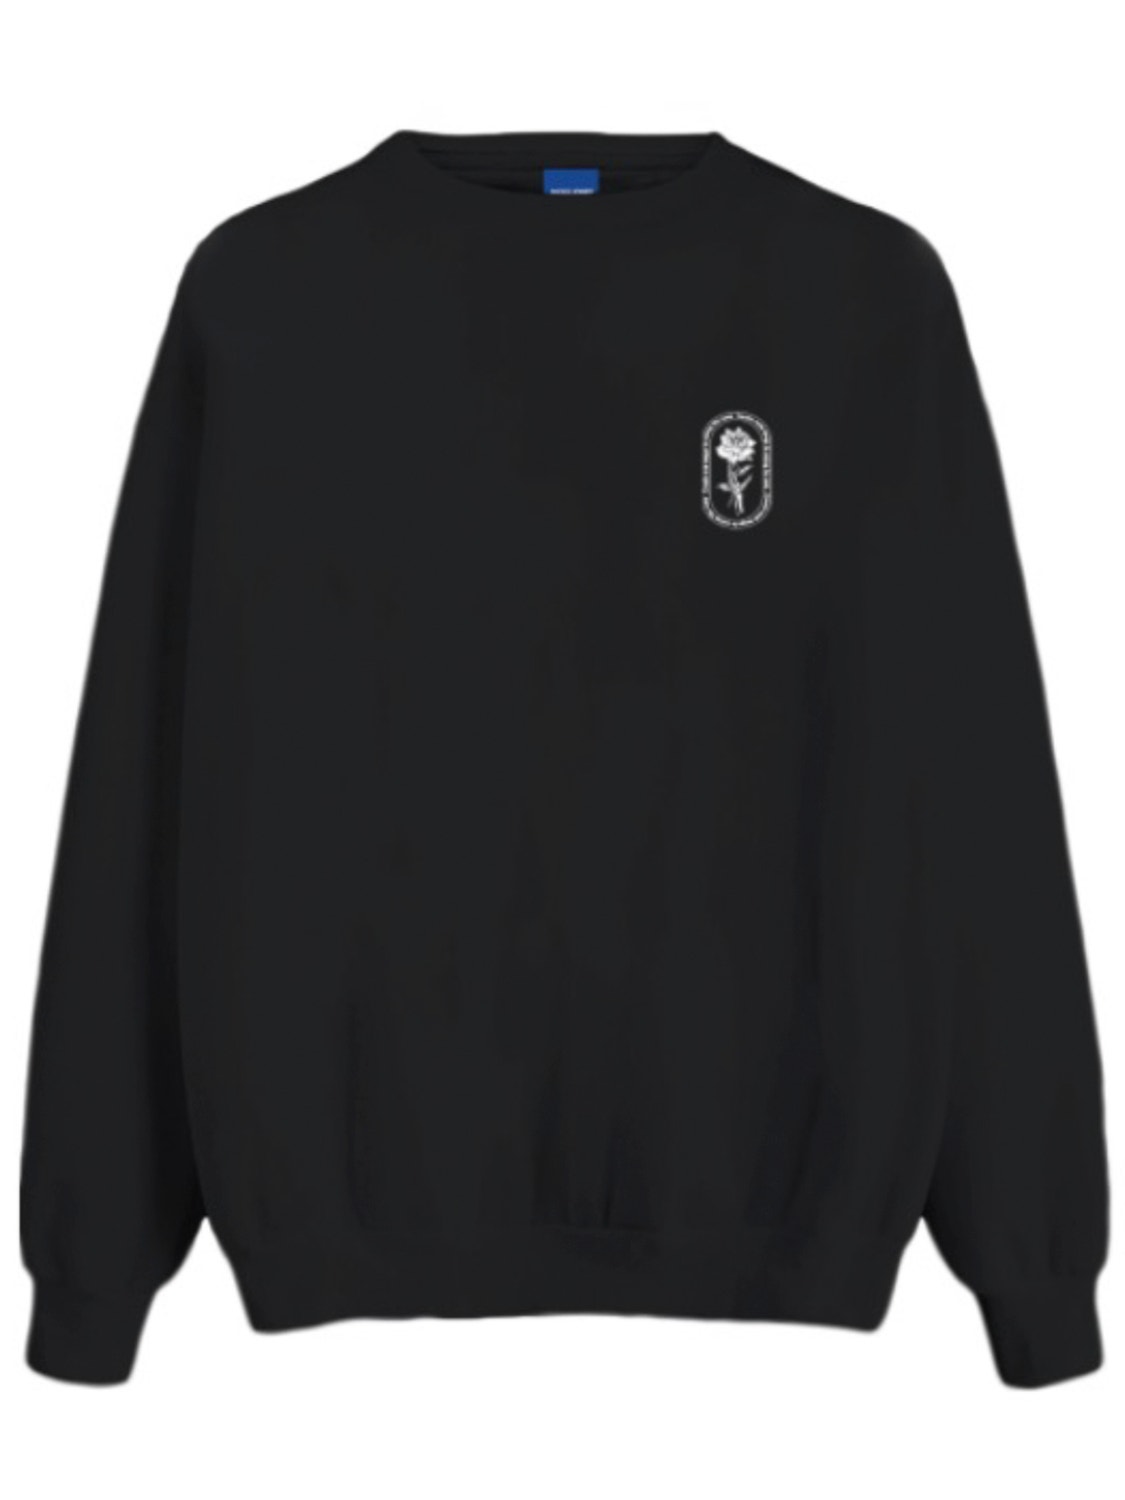 Jack & Jones Printed Crew neck Sweatshirt -Black - 12261643